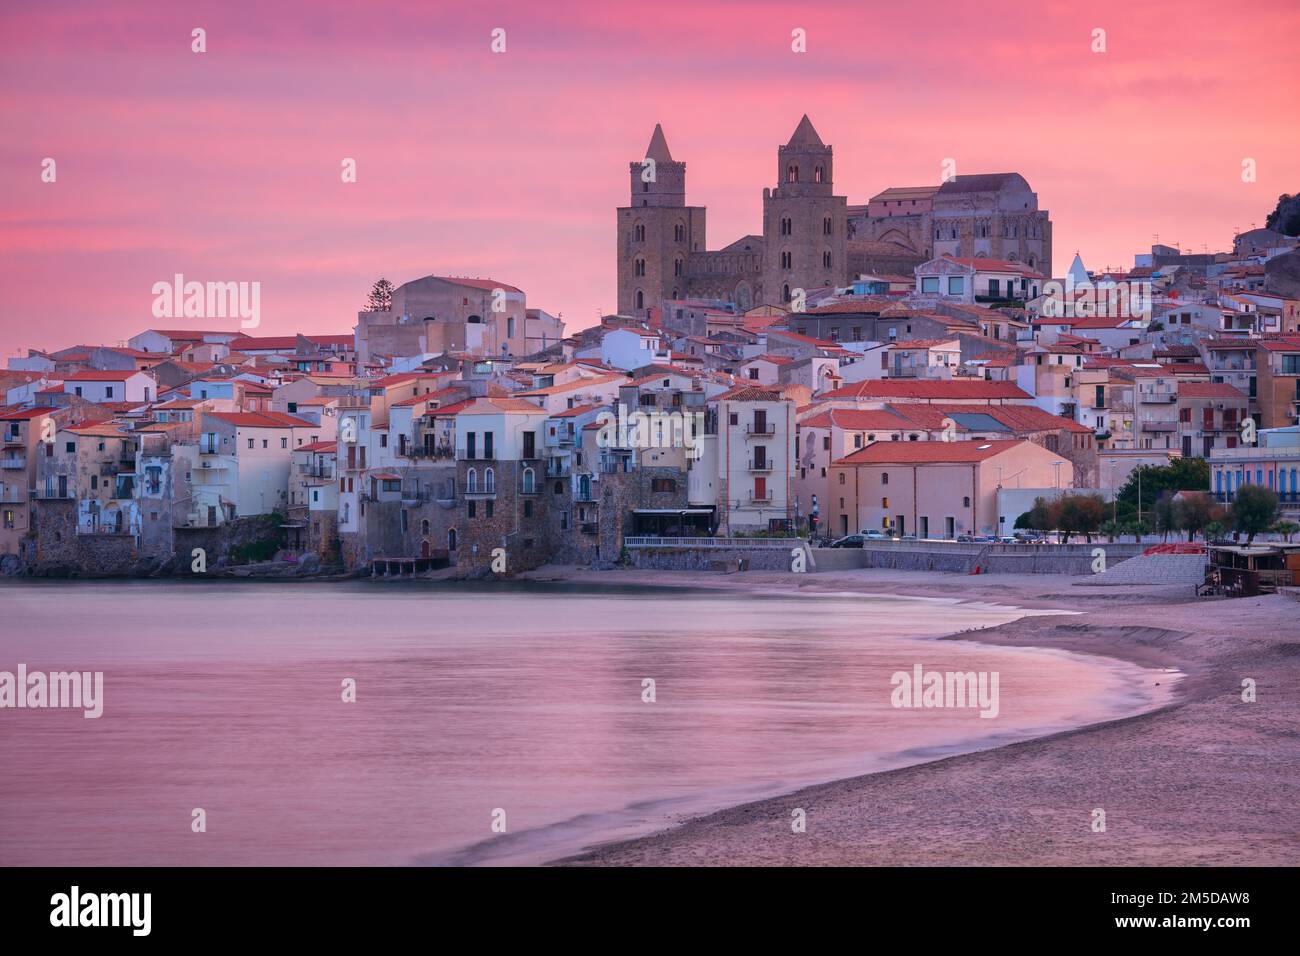 Cefalù, Sicilia, Italia. Immagine di paesaggio urbano se la città costiera Cefalu in Sicilia al tramonto drammatico. Foto Stock